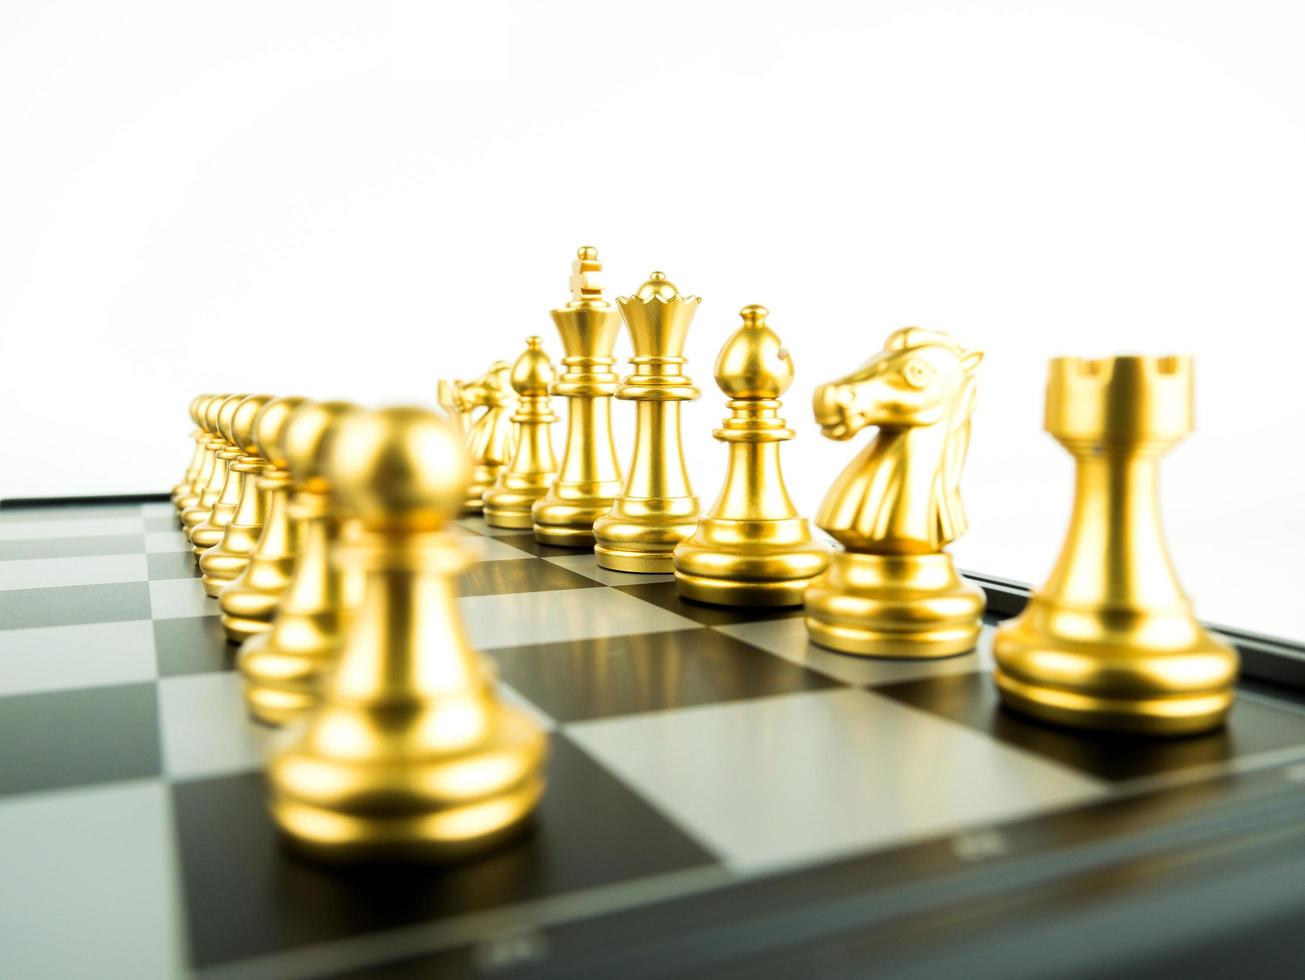 figuras de xadrez de ouro a bordo para o início do jogo, esporte intelectual e jogo tático foto